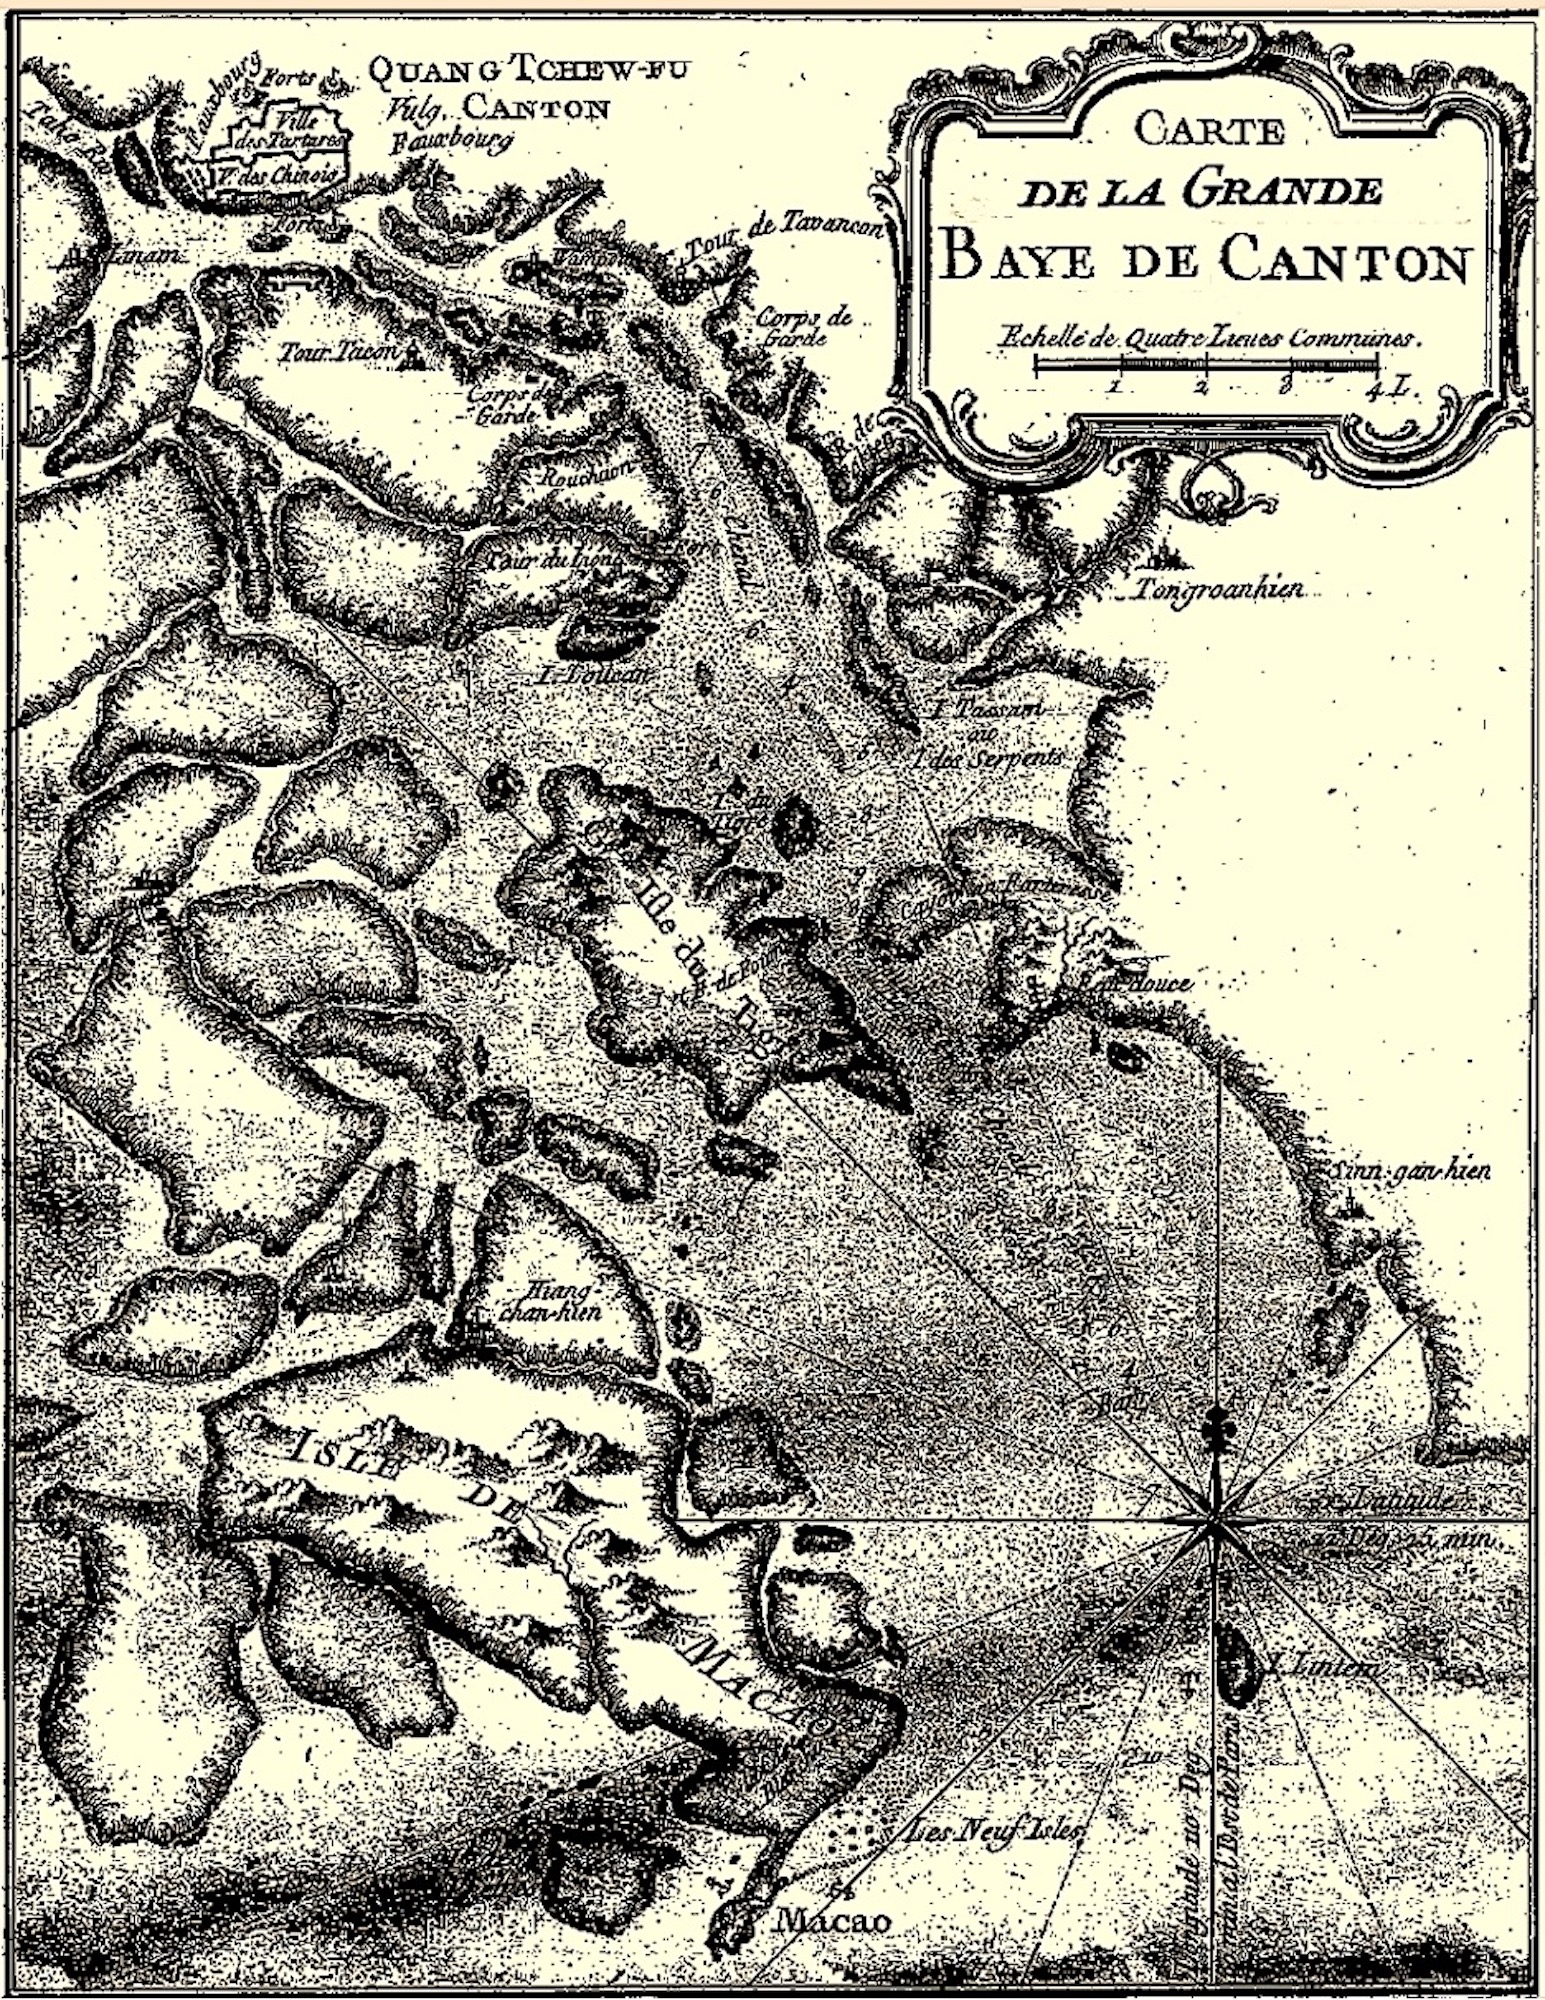 Carte de La Grande Baye de Canton / J.N. Bellin [counterfeit] (c 1748-1752)